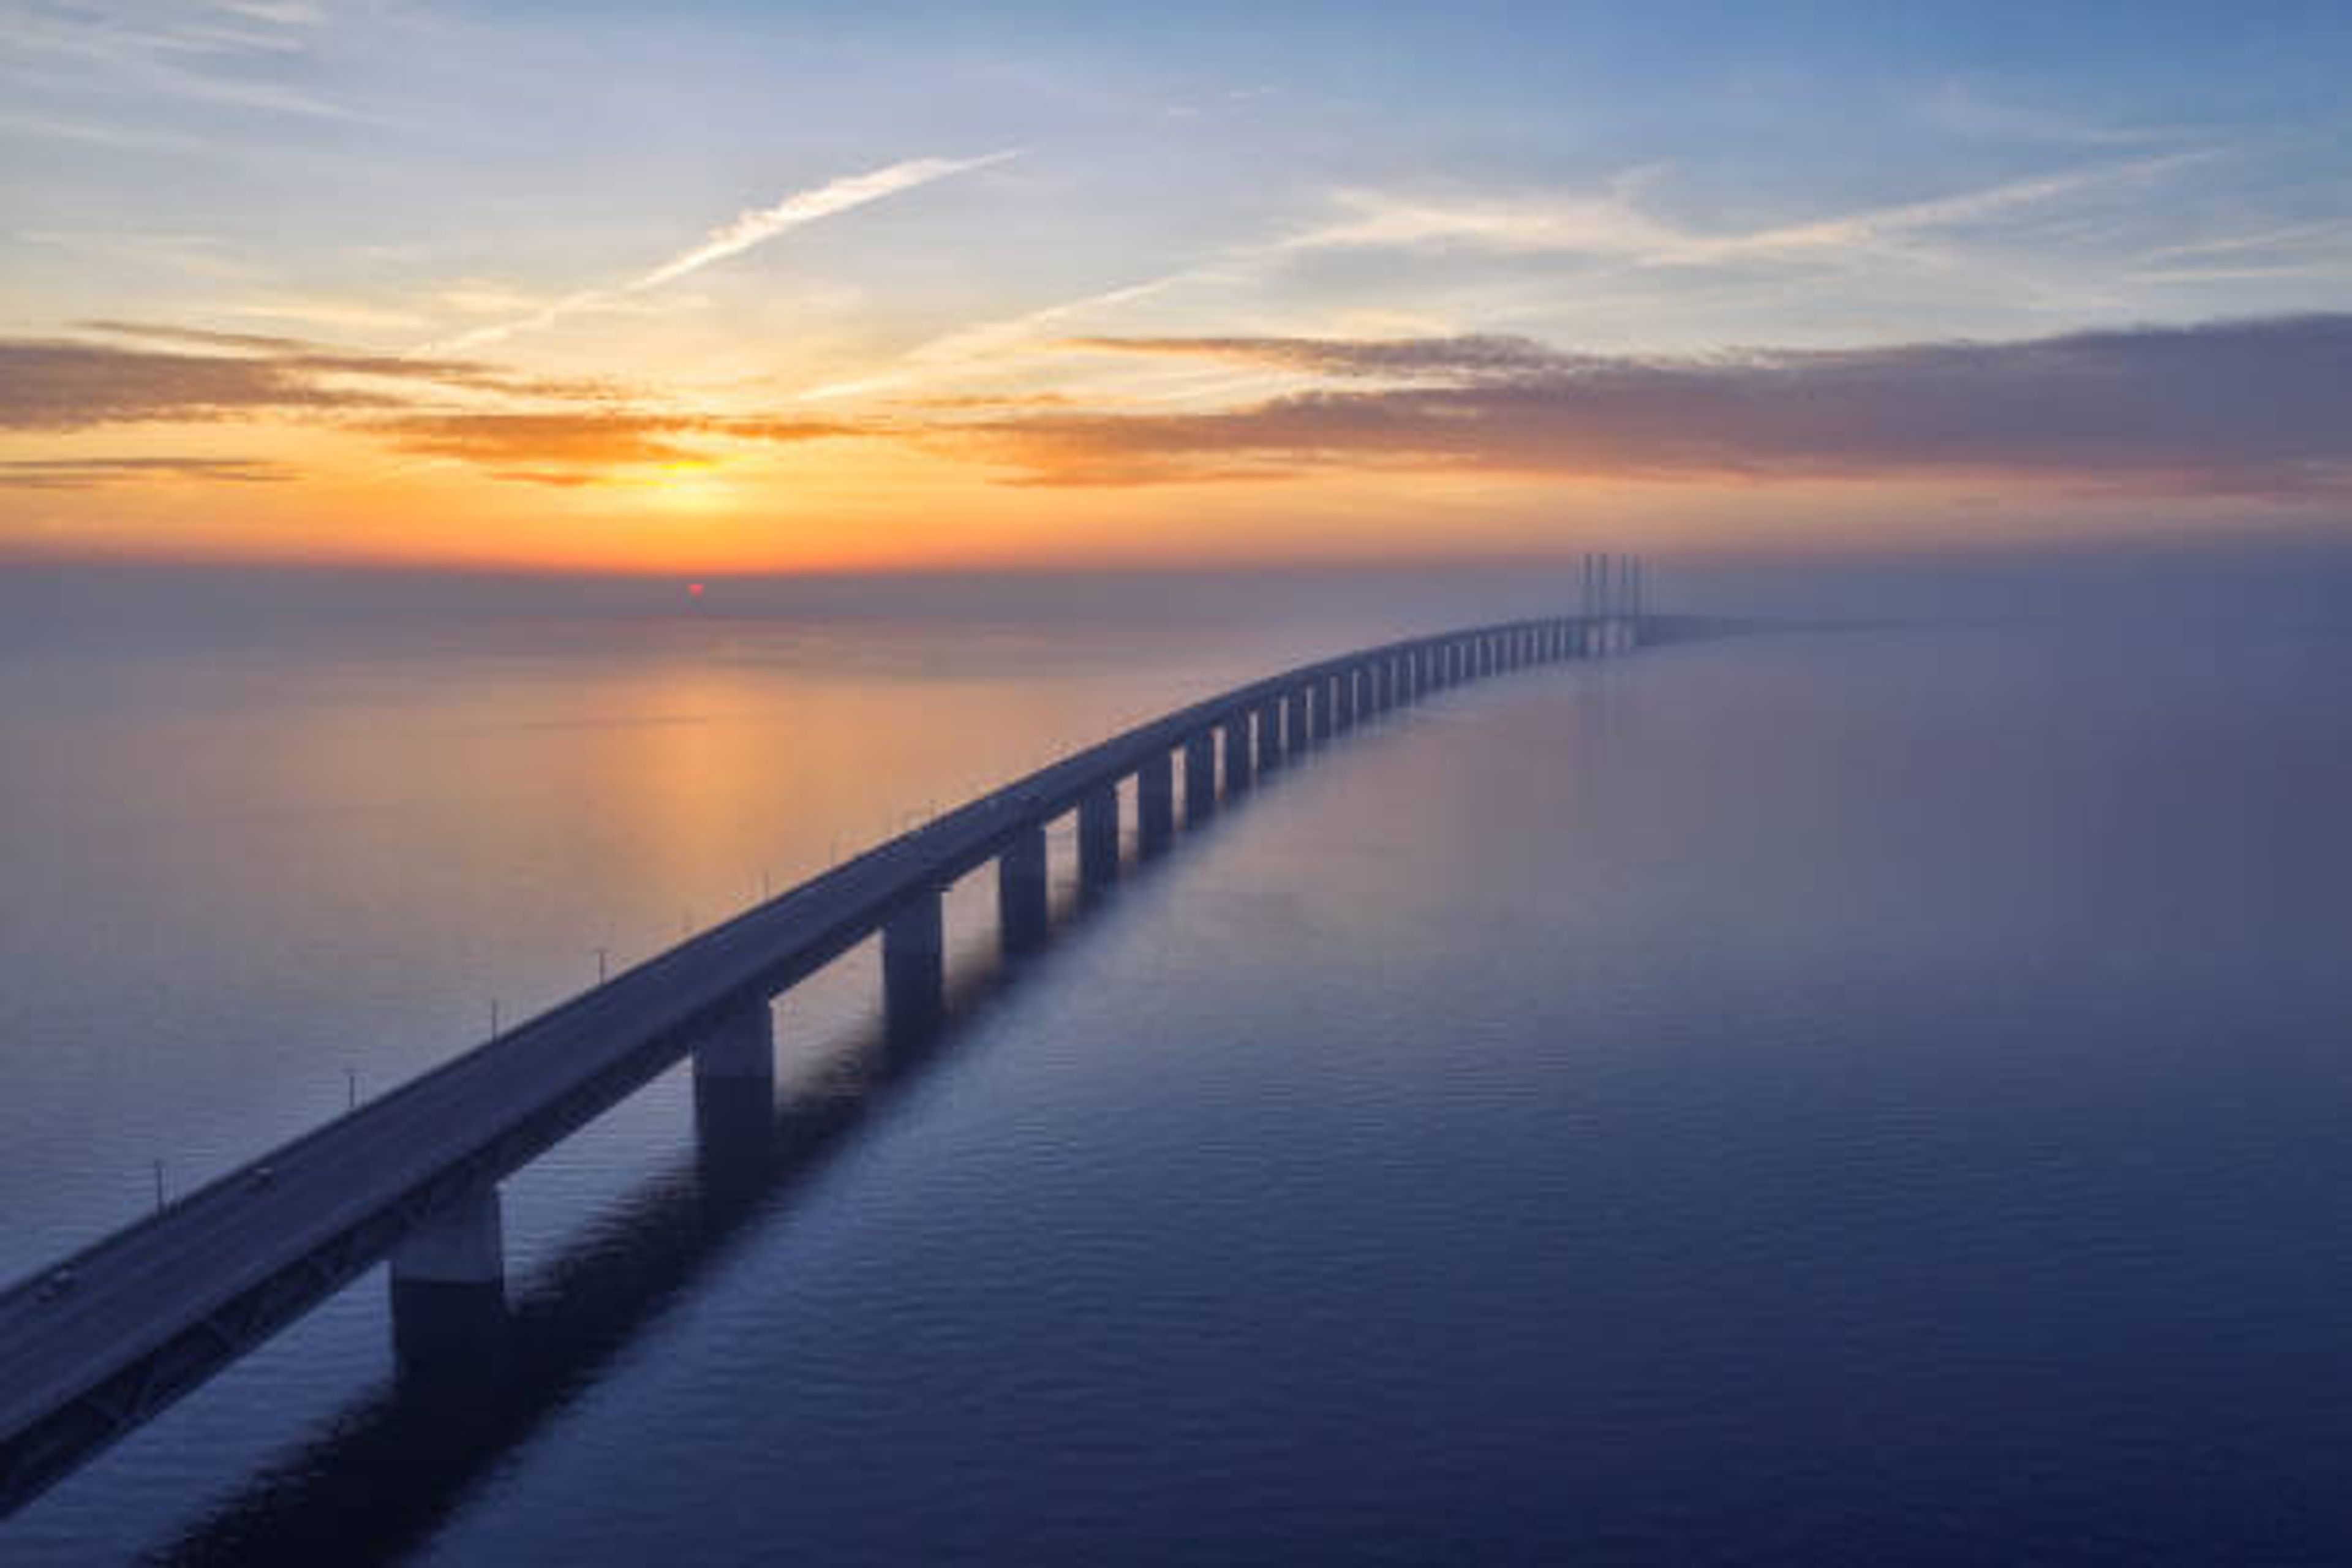 Øresundsbron Bridge